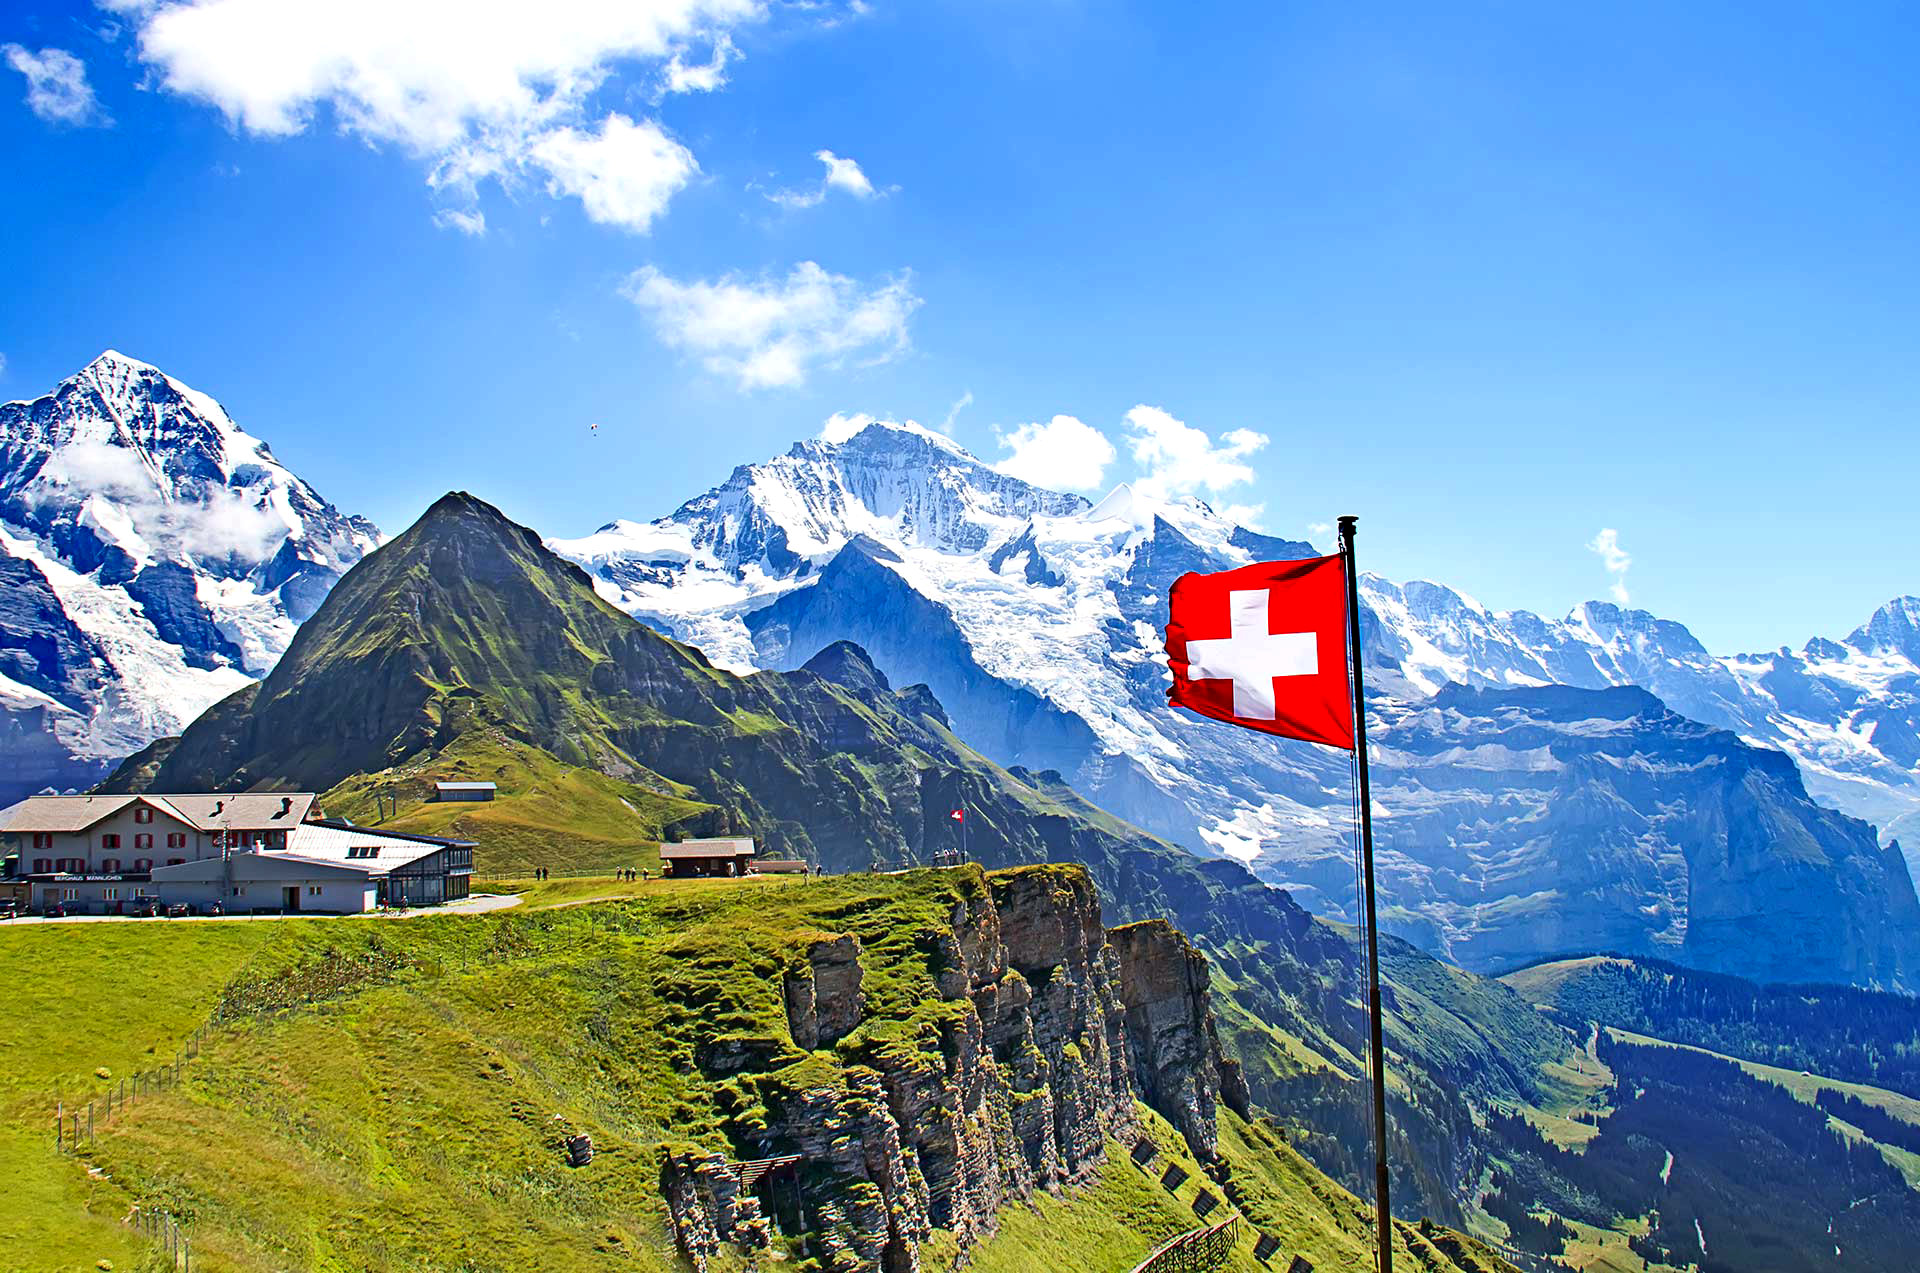 Швейцария приступила к проведению серии консультаций относительно усовершенствования своей борьбы с отмыванием денег и обходом санкций